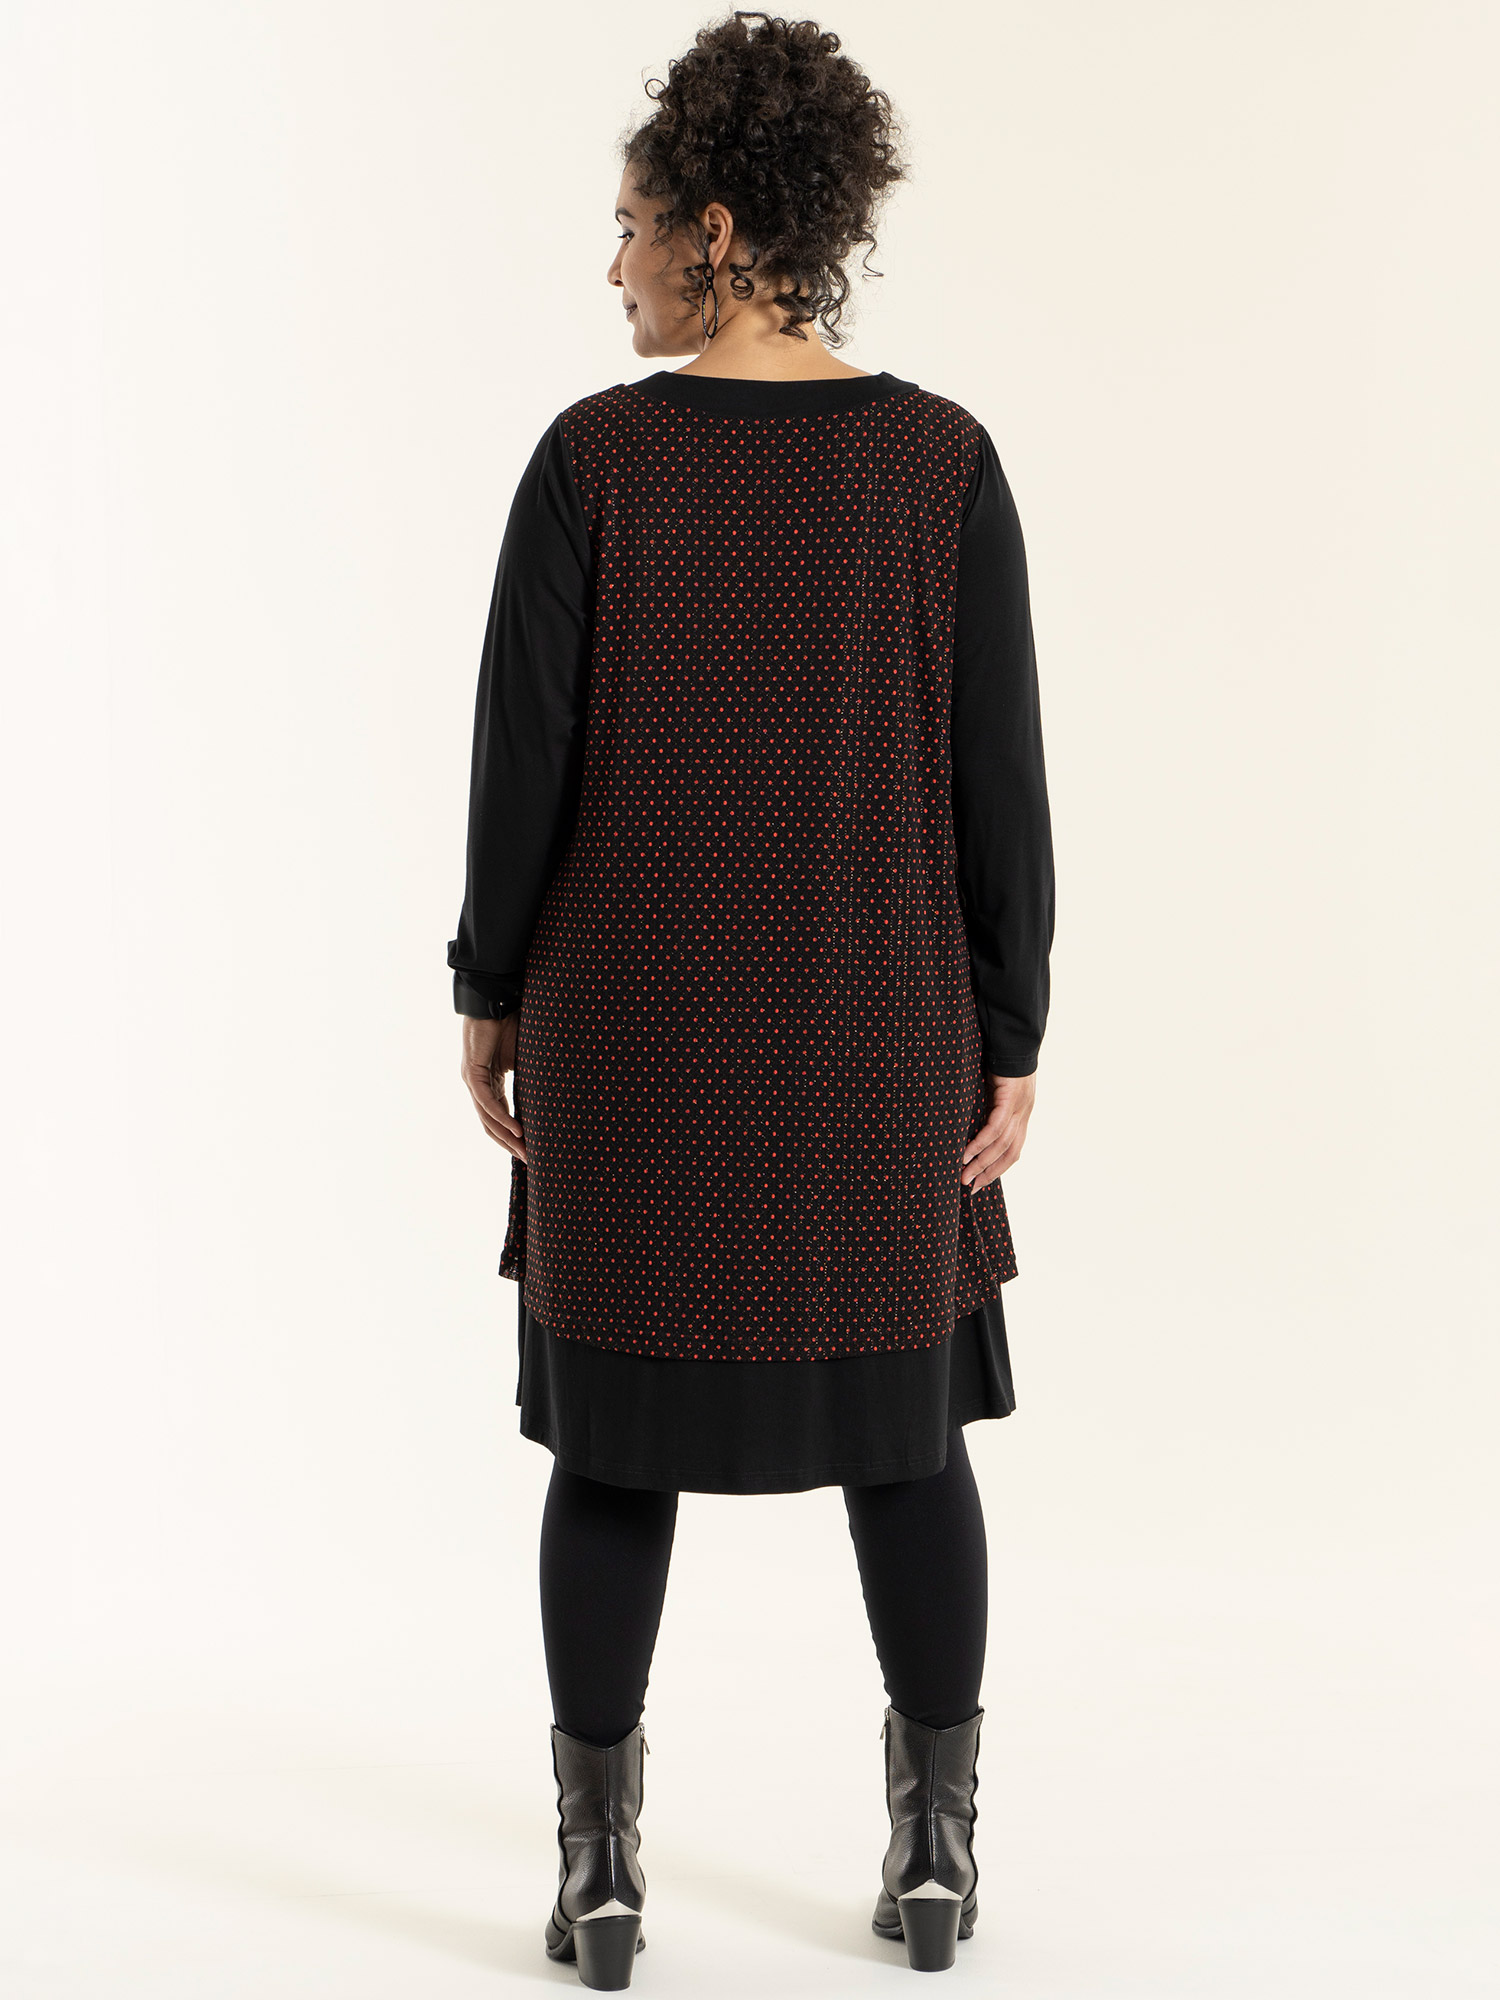 ÅSA - Sort kjole med røde prikker og glimmer tråde fra Studio